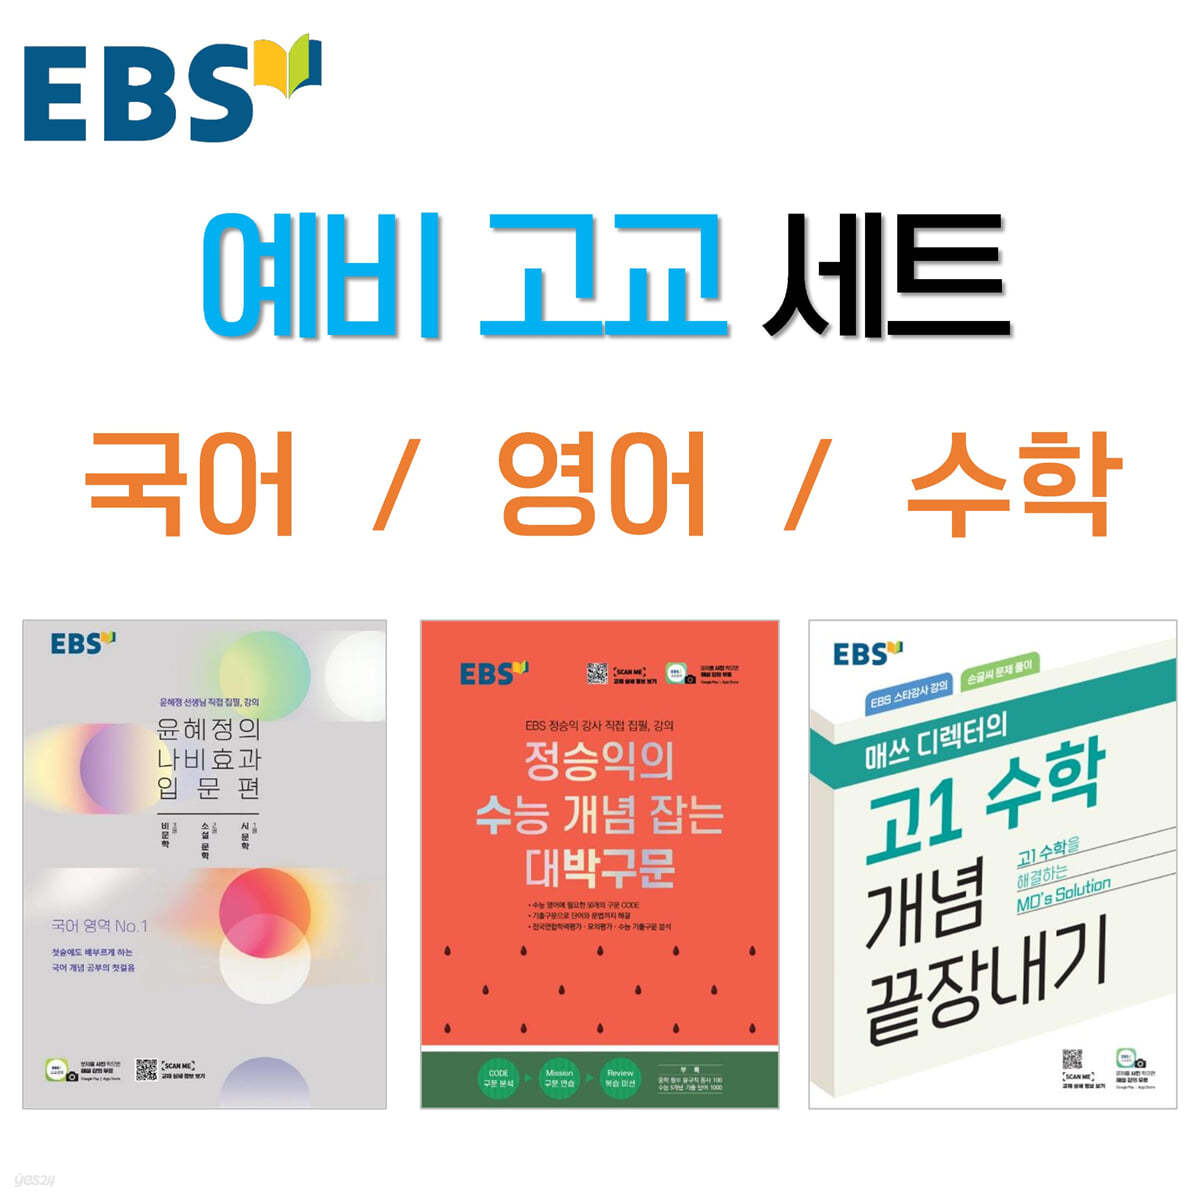 Ebs 예비 고교 세트 - 예스24